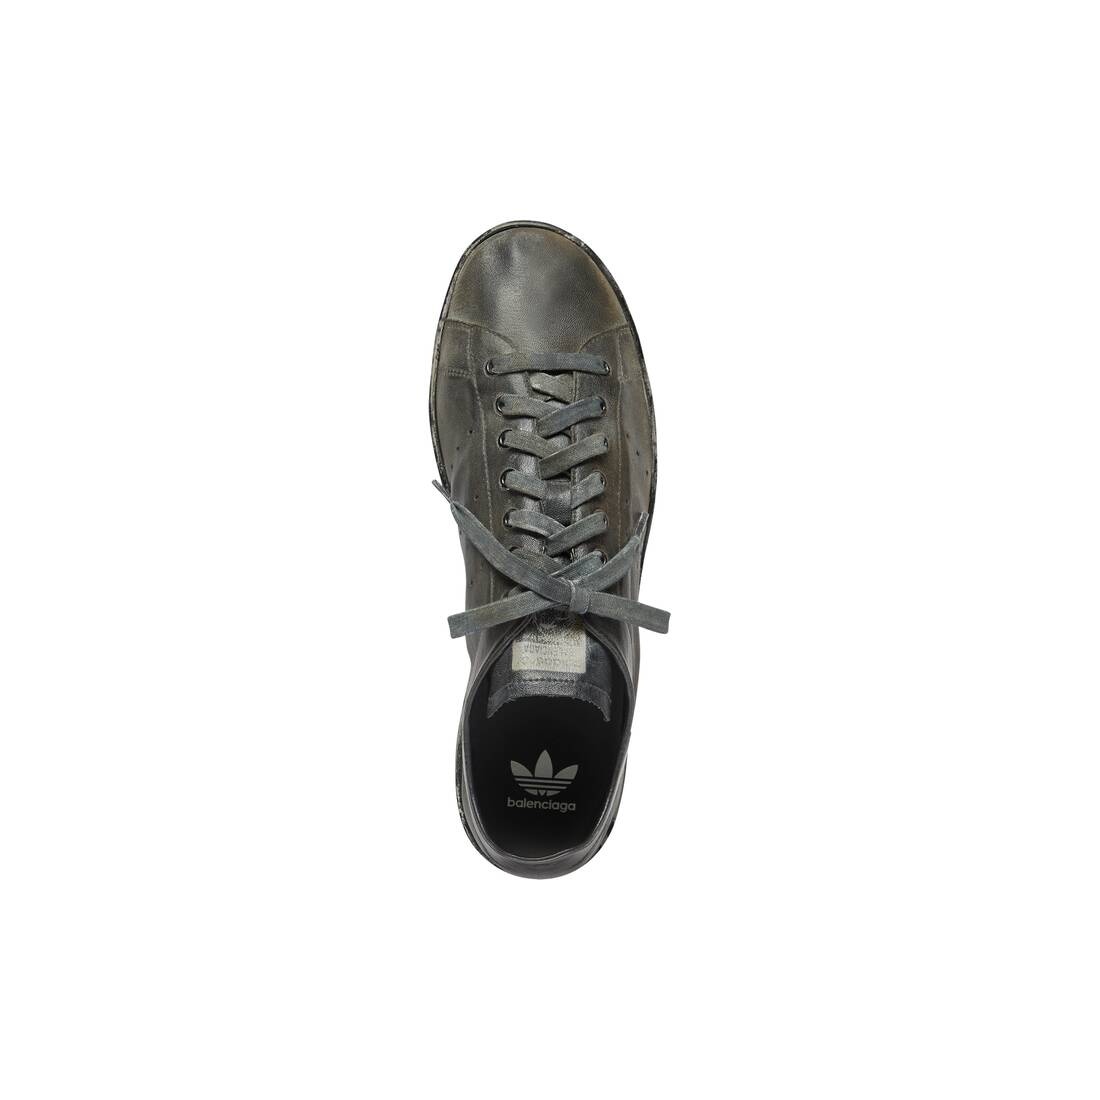 Men's Balenciaga / Adidas Stan Smith Worn-out Sneaker in Black - 5